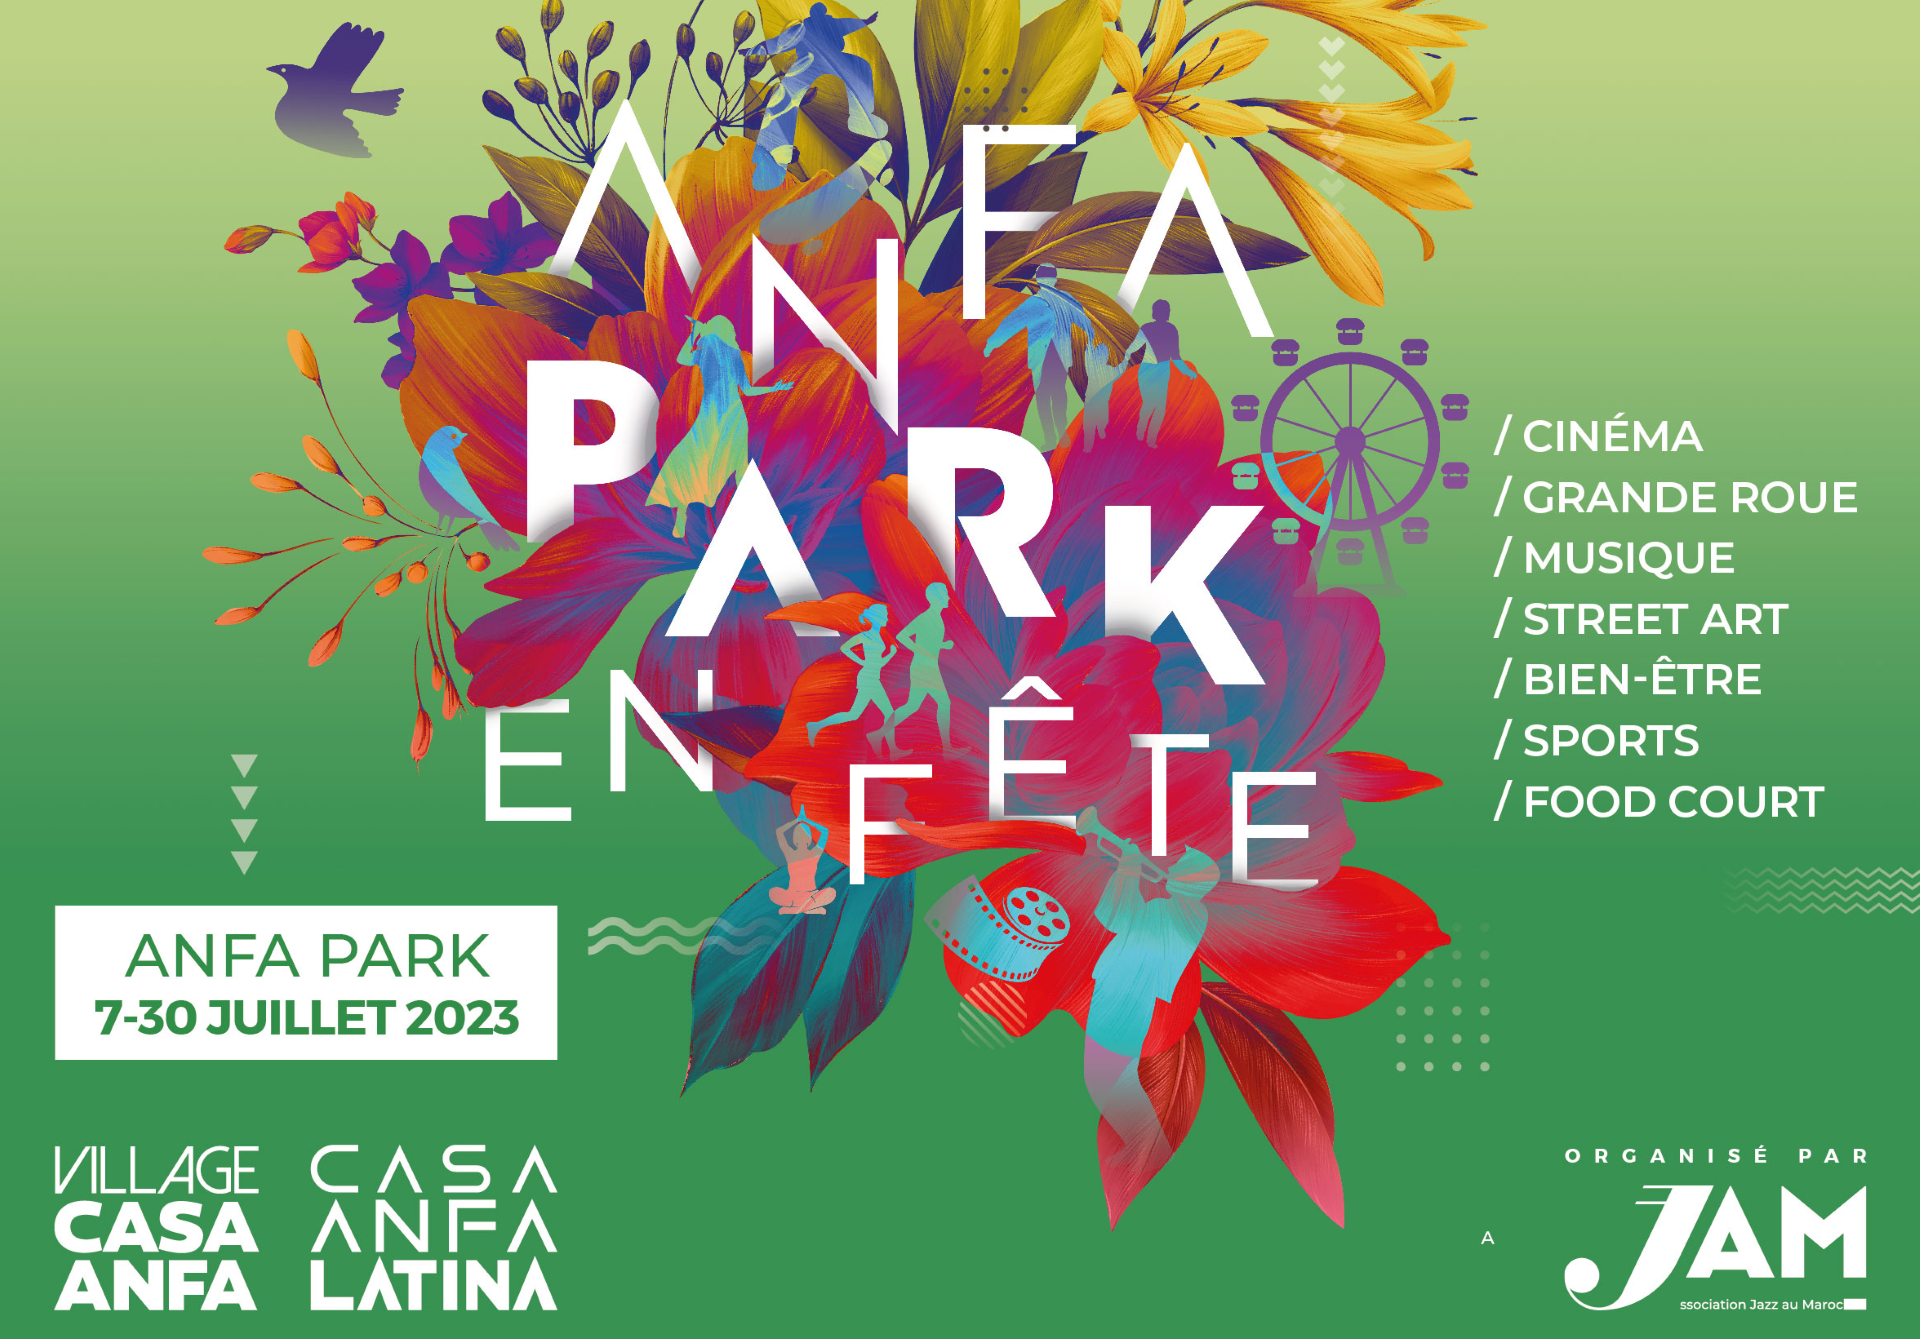 Le festival “Anfa Park en fête” de retour du 7 au 30 juillet 